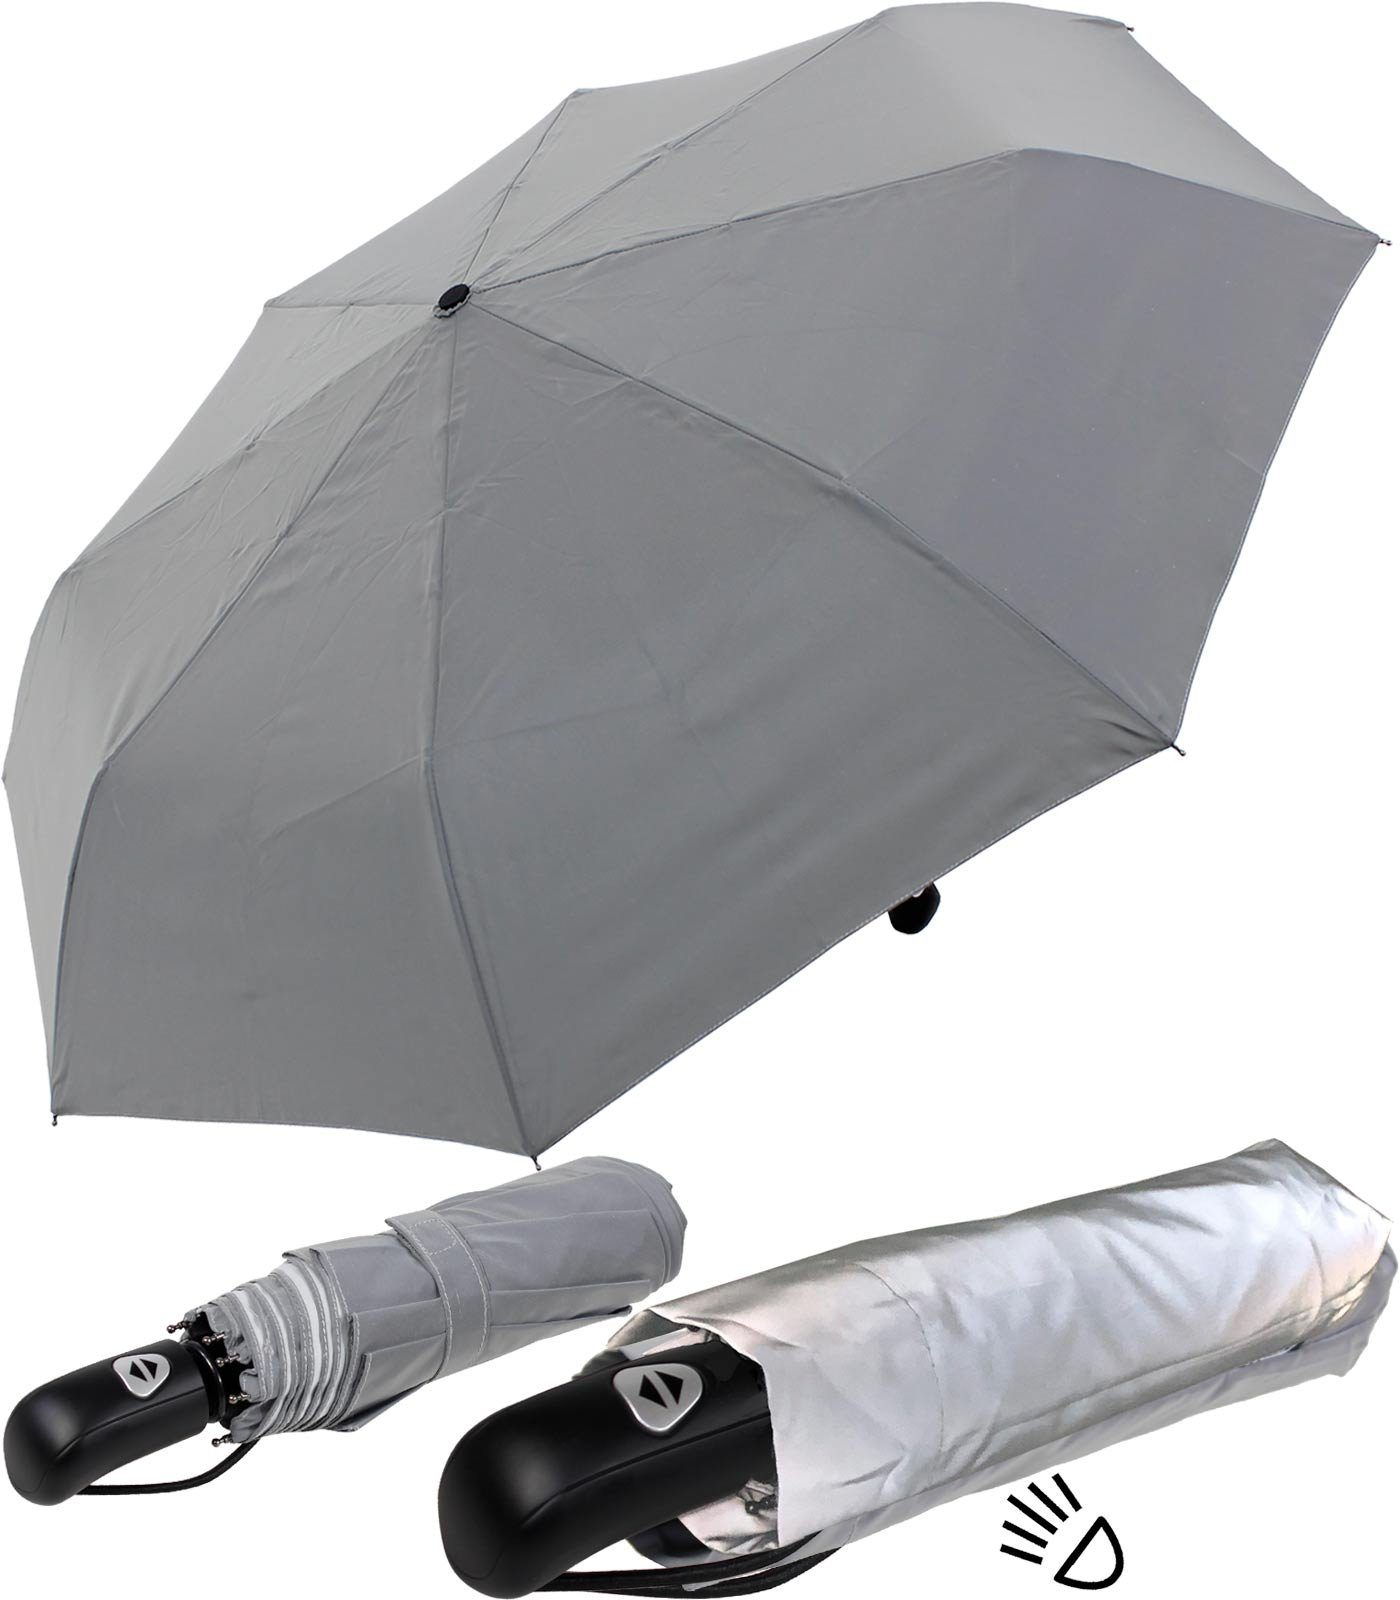 Class stark ganze Material Automatik, iX-brella Regenschirm einem aus stabiler First mit reflektierenden Dach Taschenregenschirm besteht das